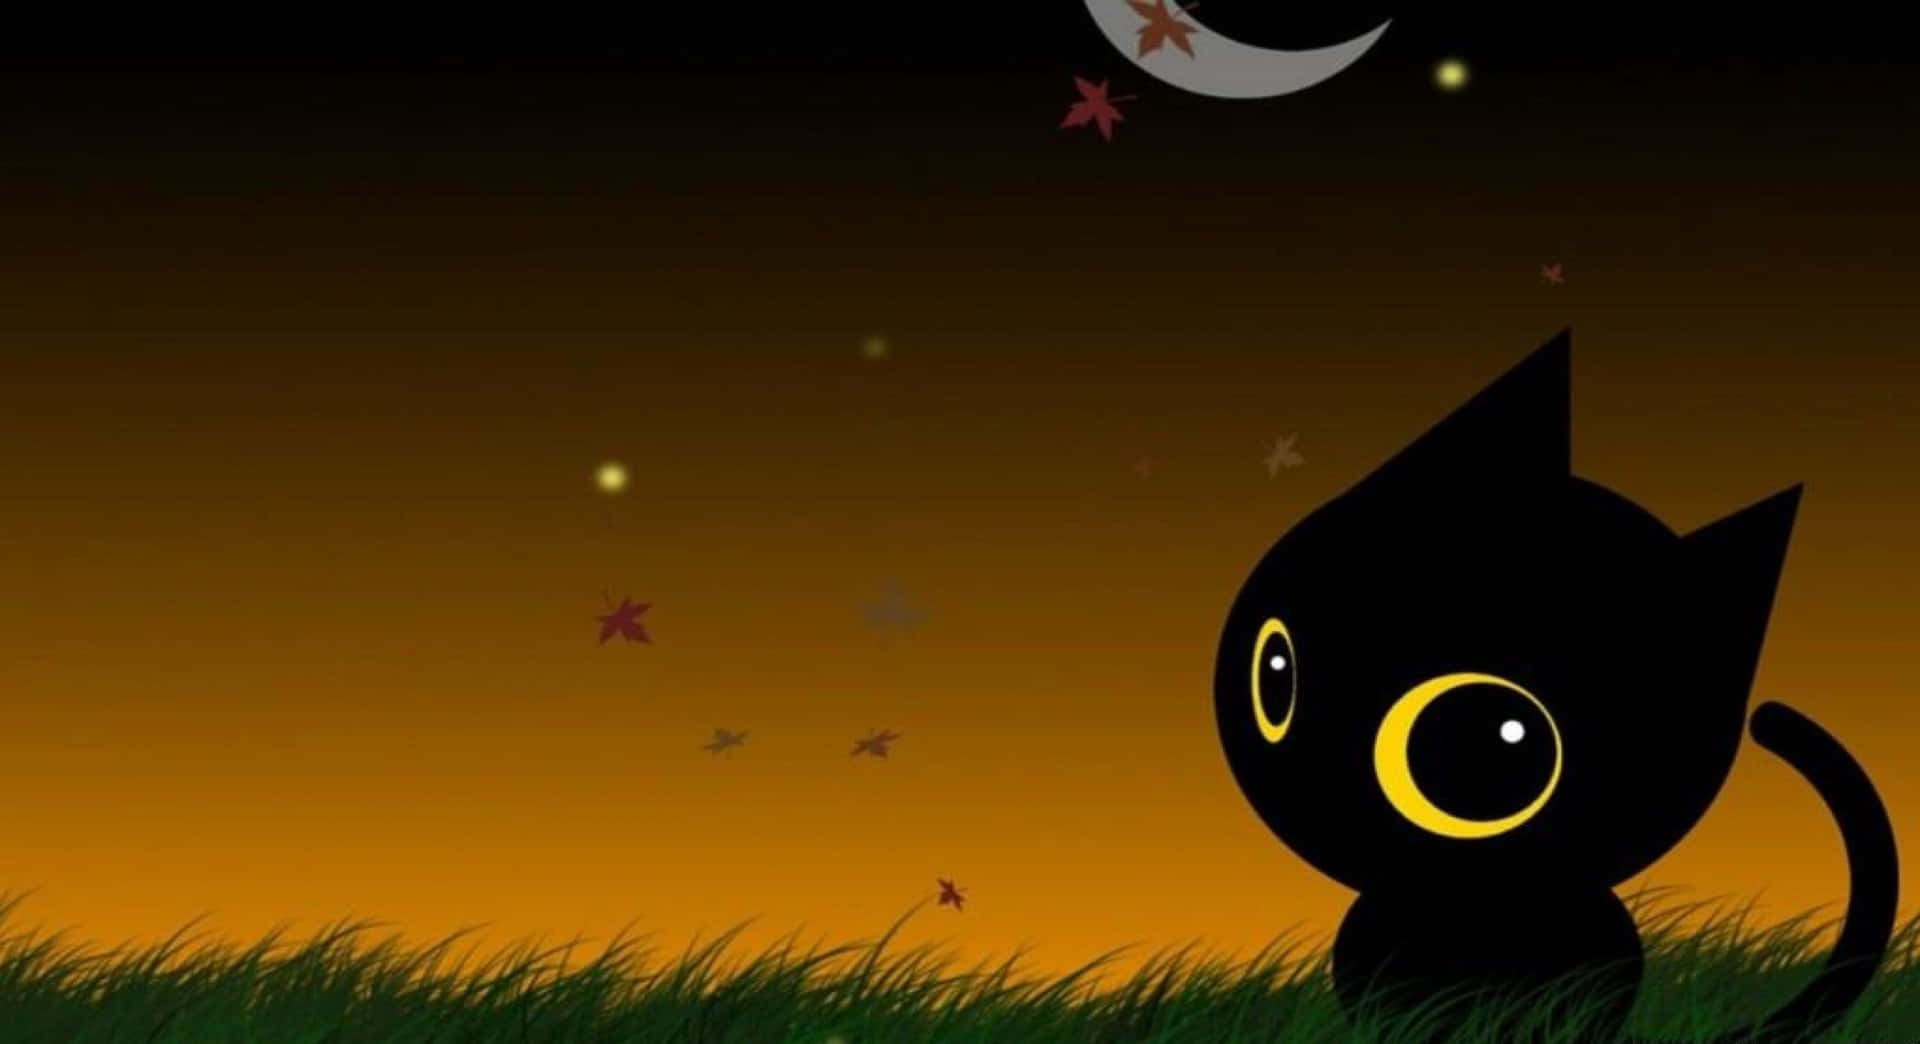 Imagende Halloween De Un Lindo Gatito Negro Chibi En El Cielo Nocturno.